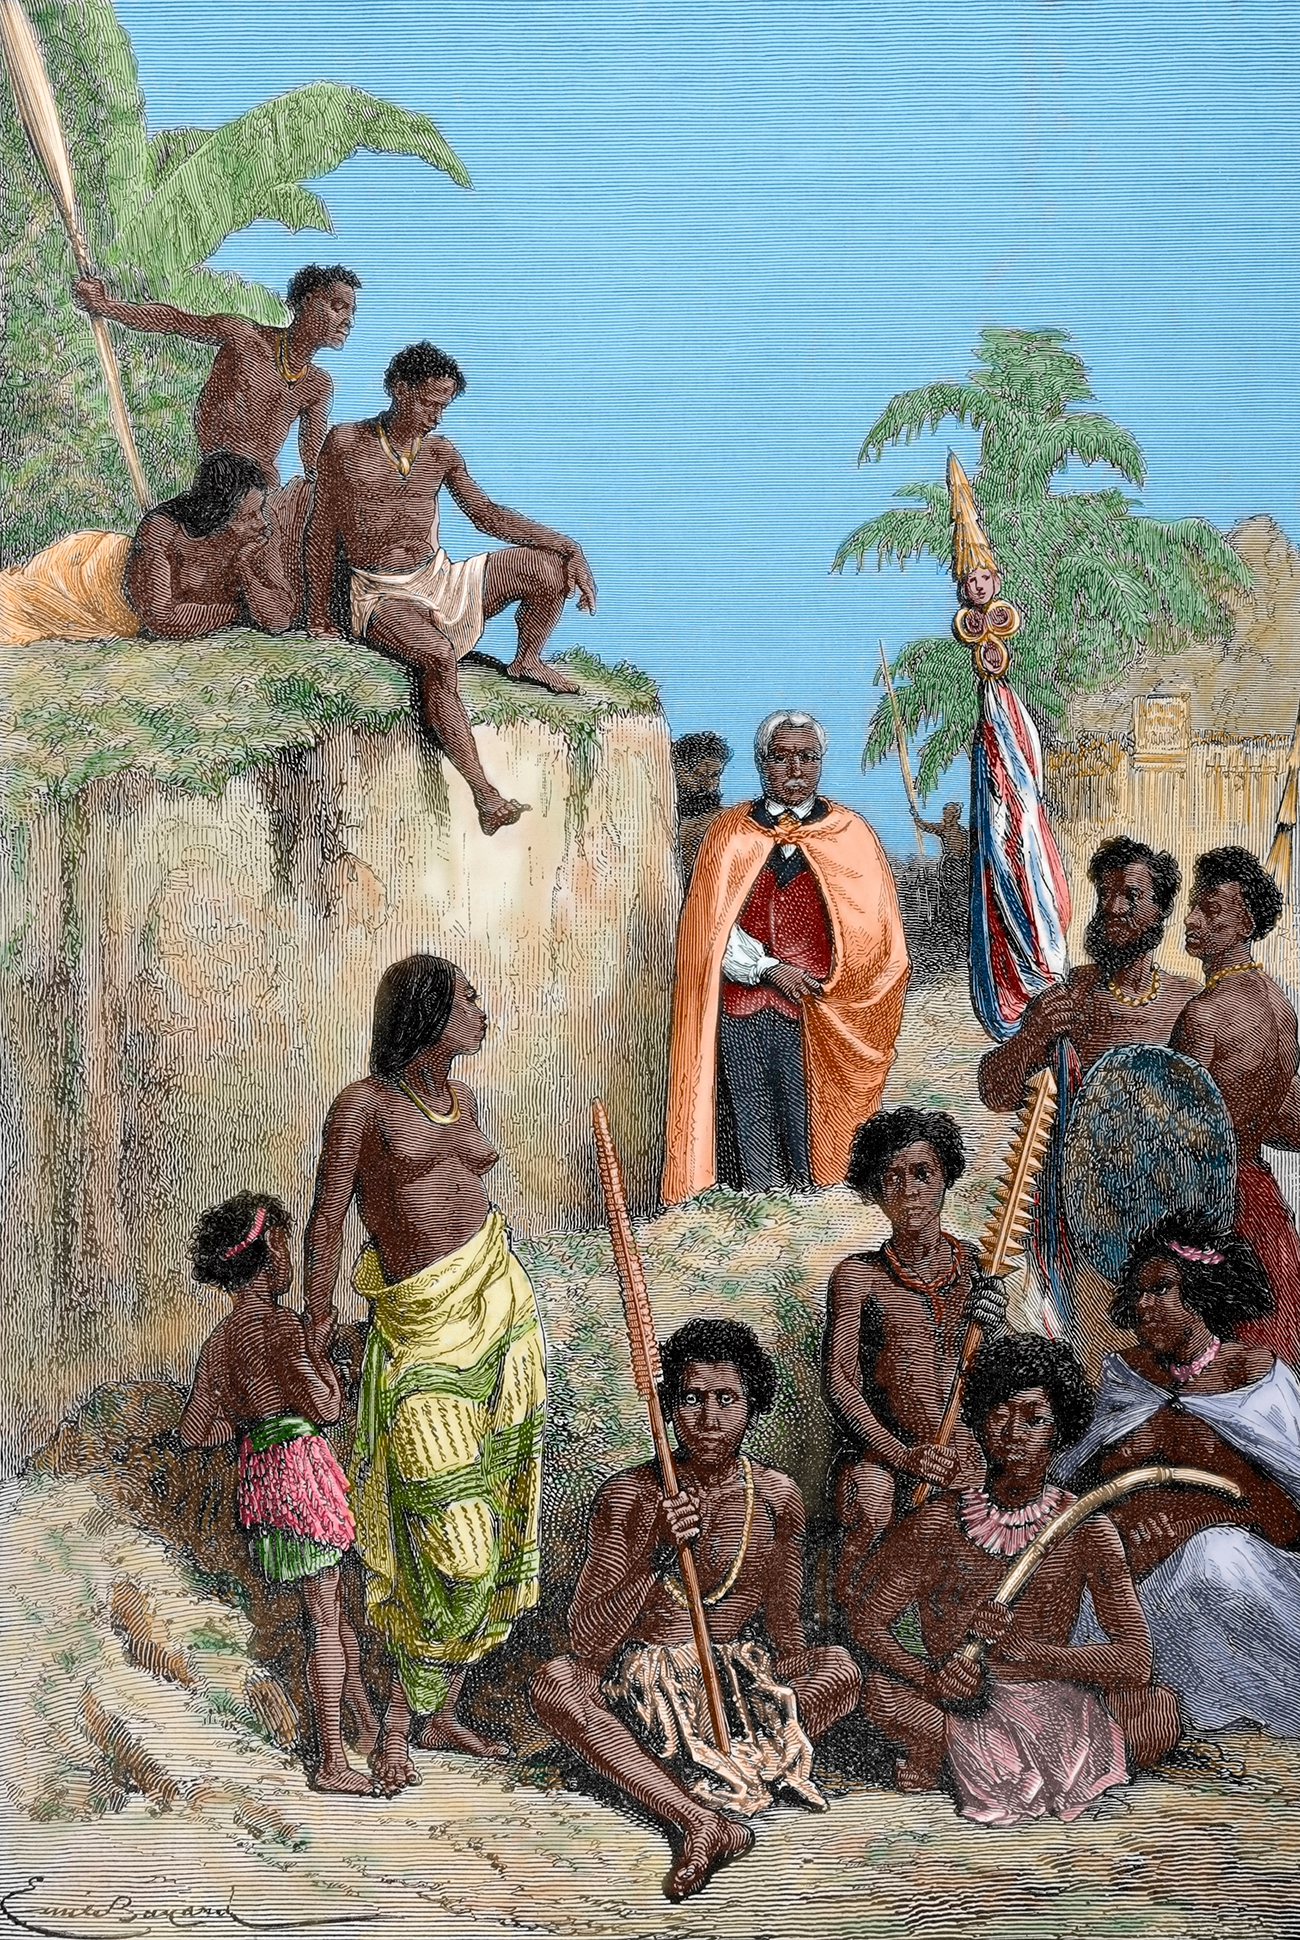 Kralj otoka Havaji Kamehameha I (1758-1819) in njegovi bojevniki, 1819. Upodobil E. Bayard / The Illustrated World, 1880. Vir: Getty Images